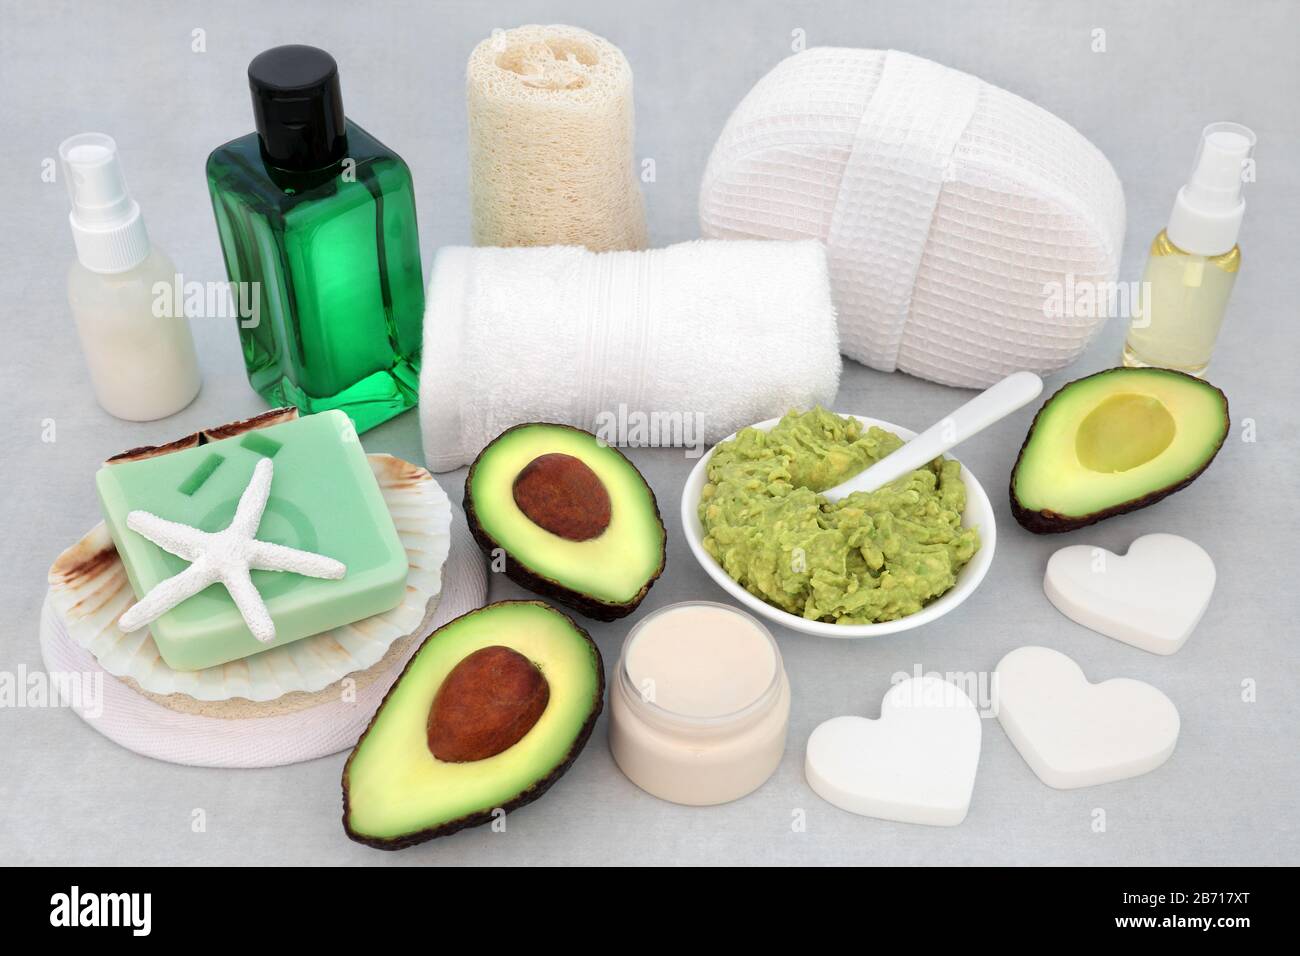 Schönheitsbehandlung für Hautpflege mit Avocado- und Gesichtsmaskenpaste, Feuchtigkeitspflege, Lotion und Öl mit Reinigungsprodukten. Konzept zur Anti-Aging-Behandlung im Gesundheitswesen. Stockfoto